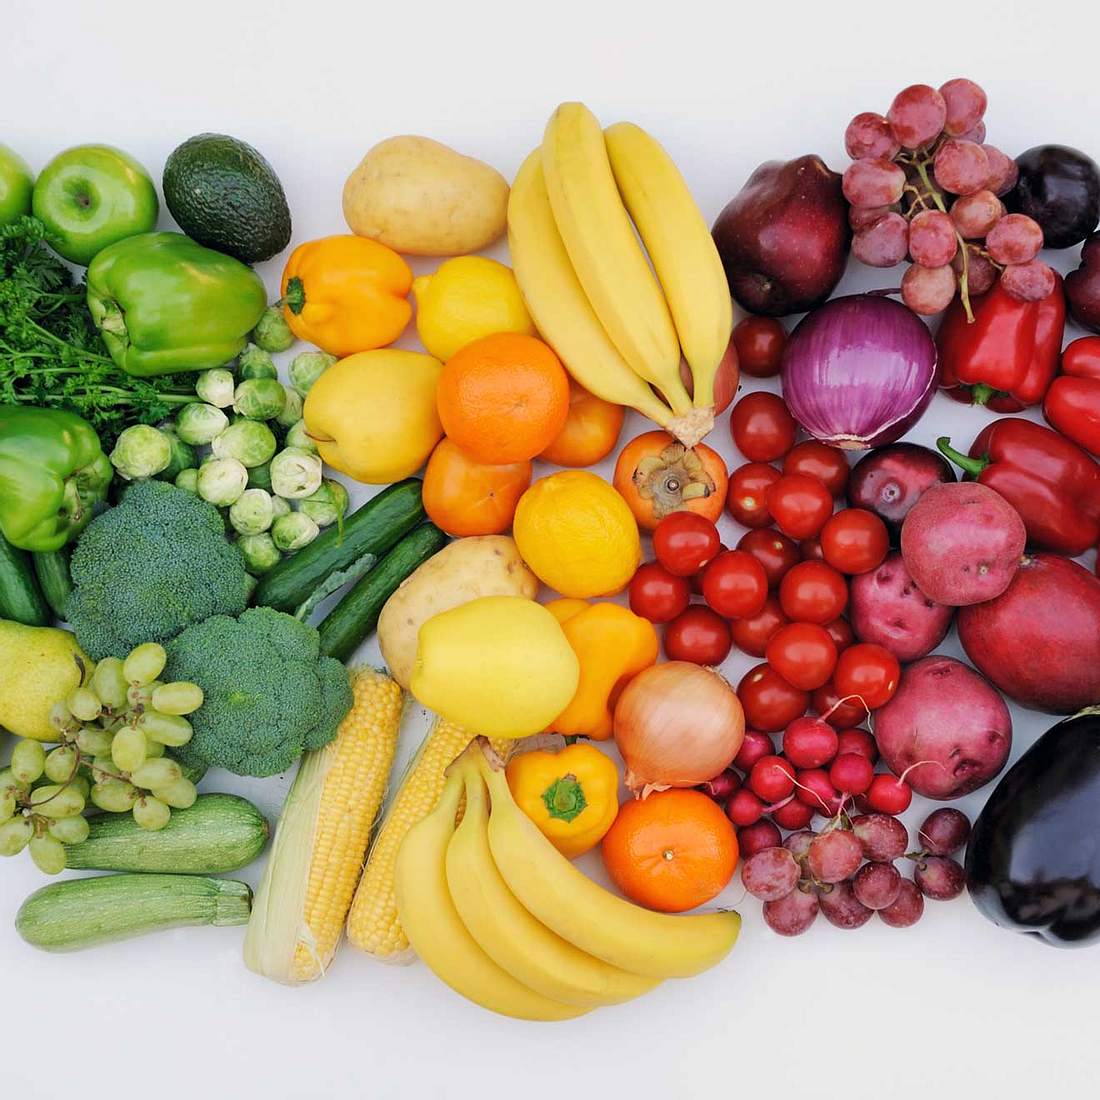 Obst und Gemüse essen, gesund essen, gesund ernähren, schöne haut ernährung, schöne haut essen, obst und gemüse haut, schone haut gesund essen, beauty tipps, beauty food